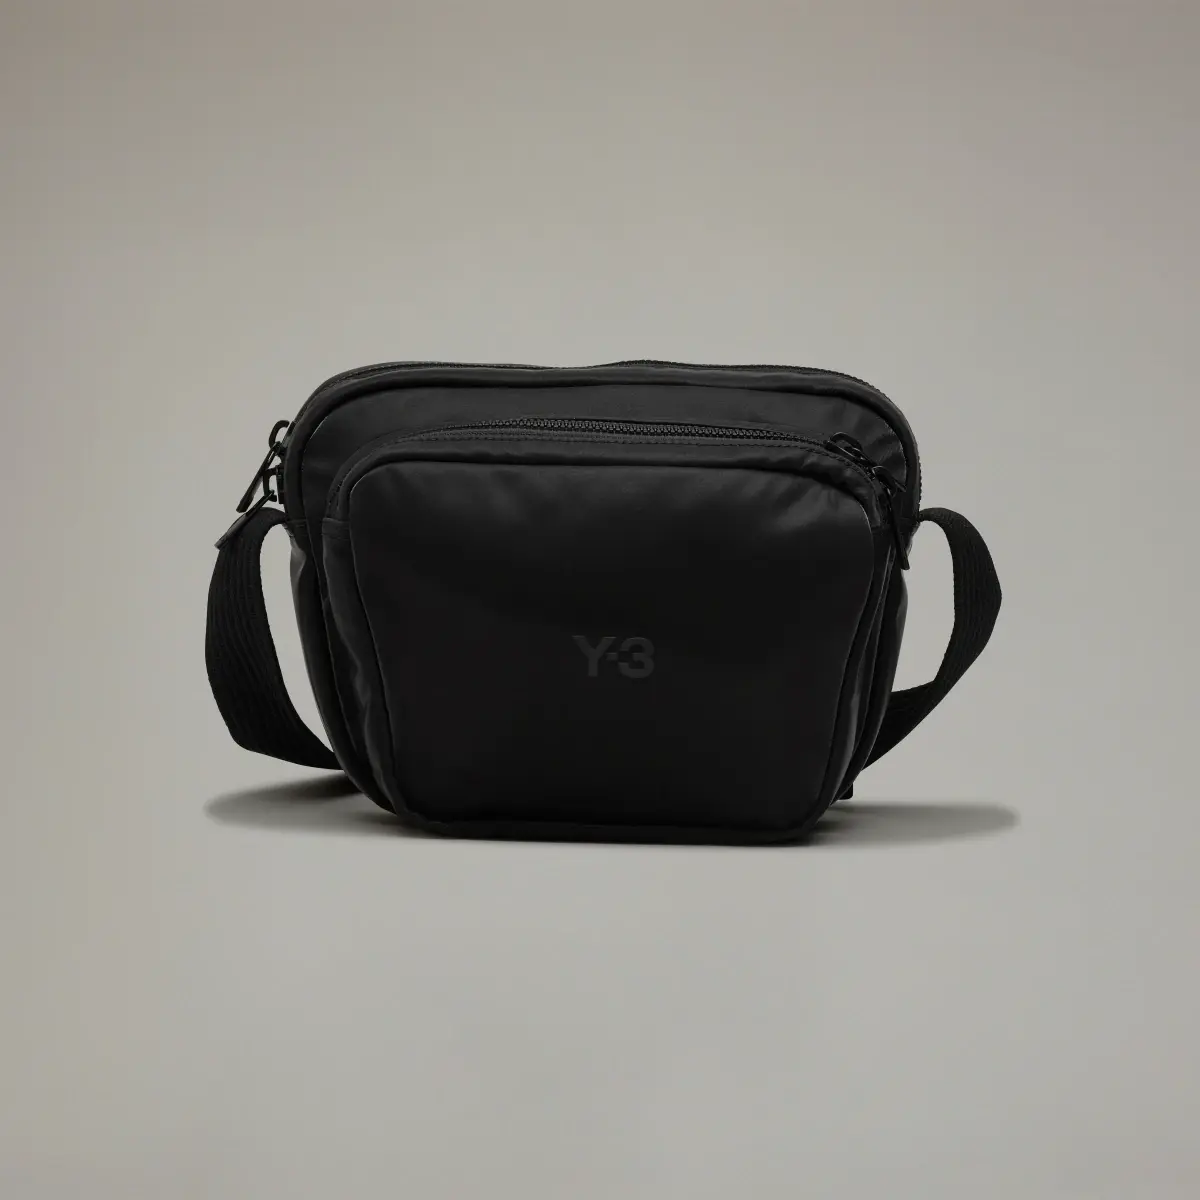 Adidas Y-3 Crossbody Bag. 2